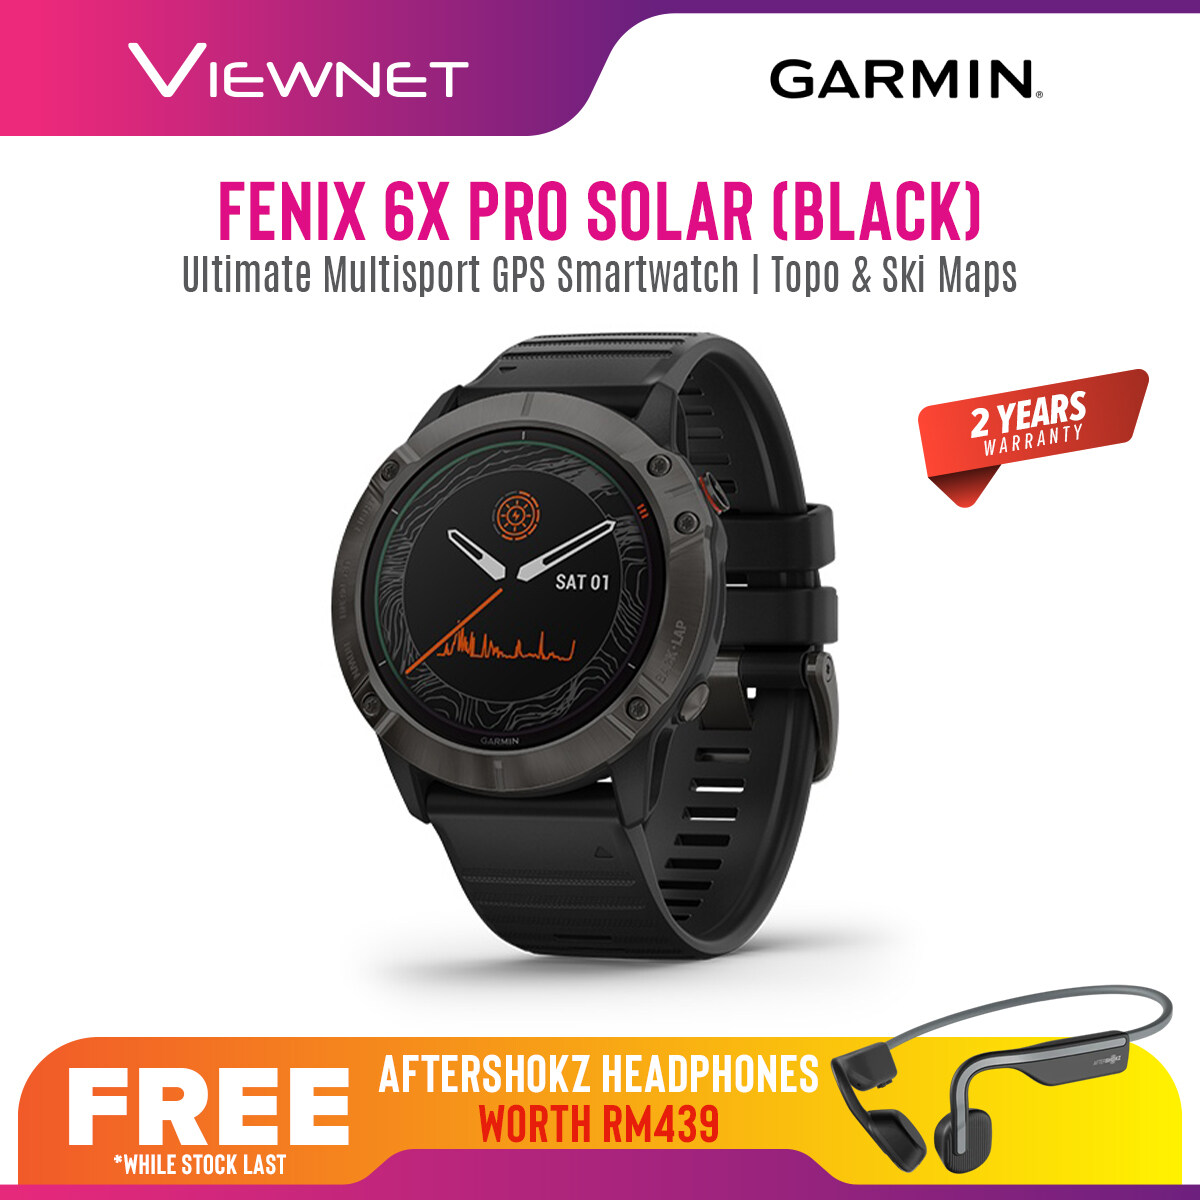 Garmin Fenix 6X Pro Solar Ultimate Multisport GPS Smartwatch with Topo & Ski Maps Sport Watch 010-02157-55 / 010-02157-5F 2 Years Warranty